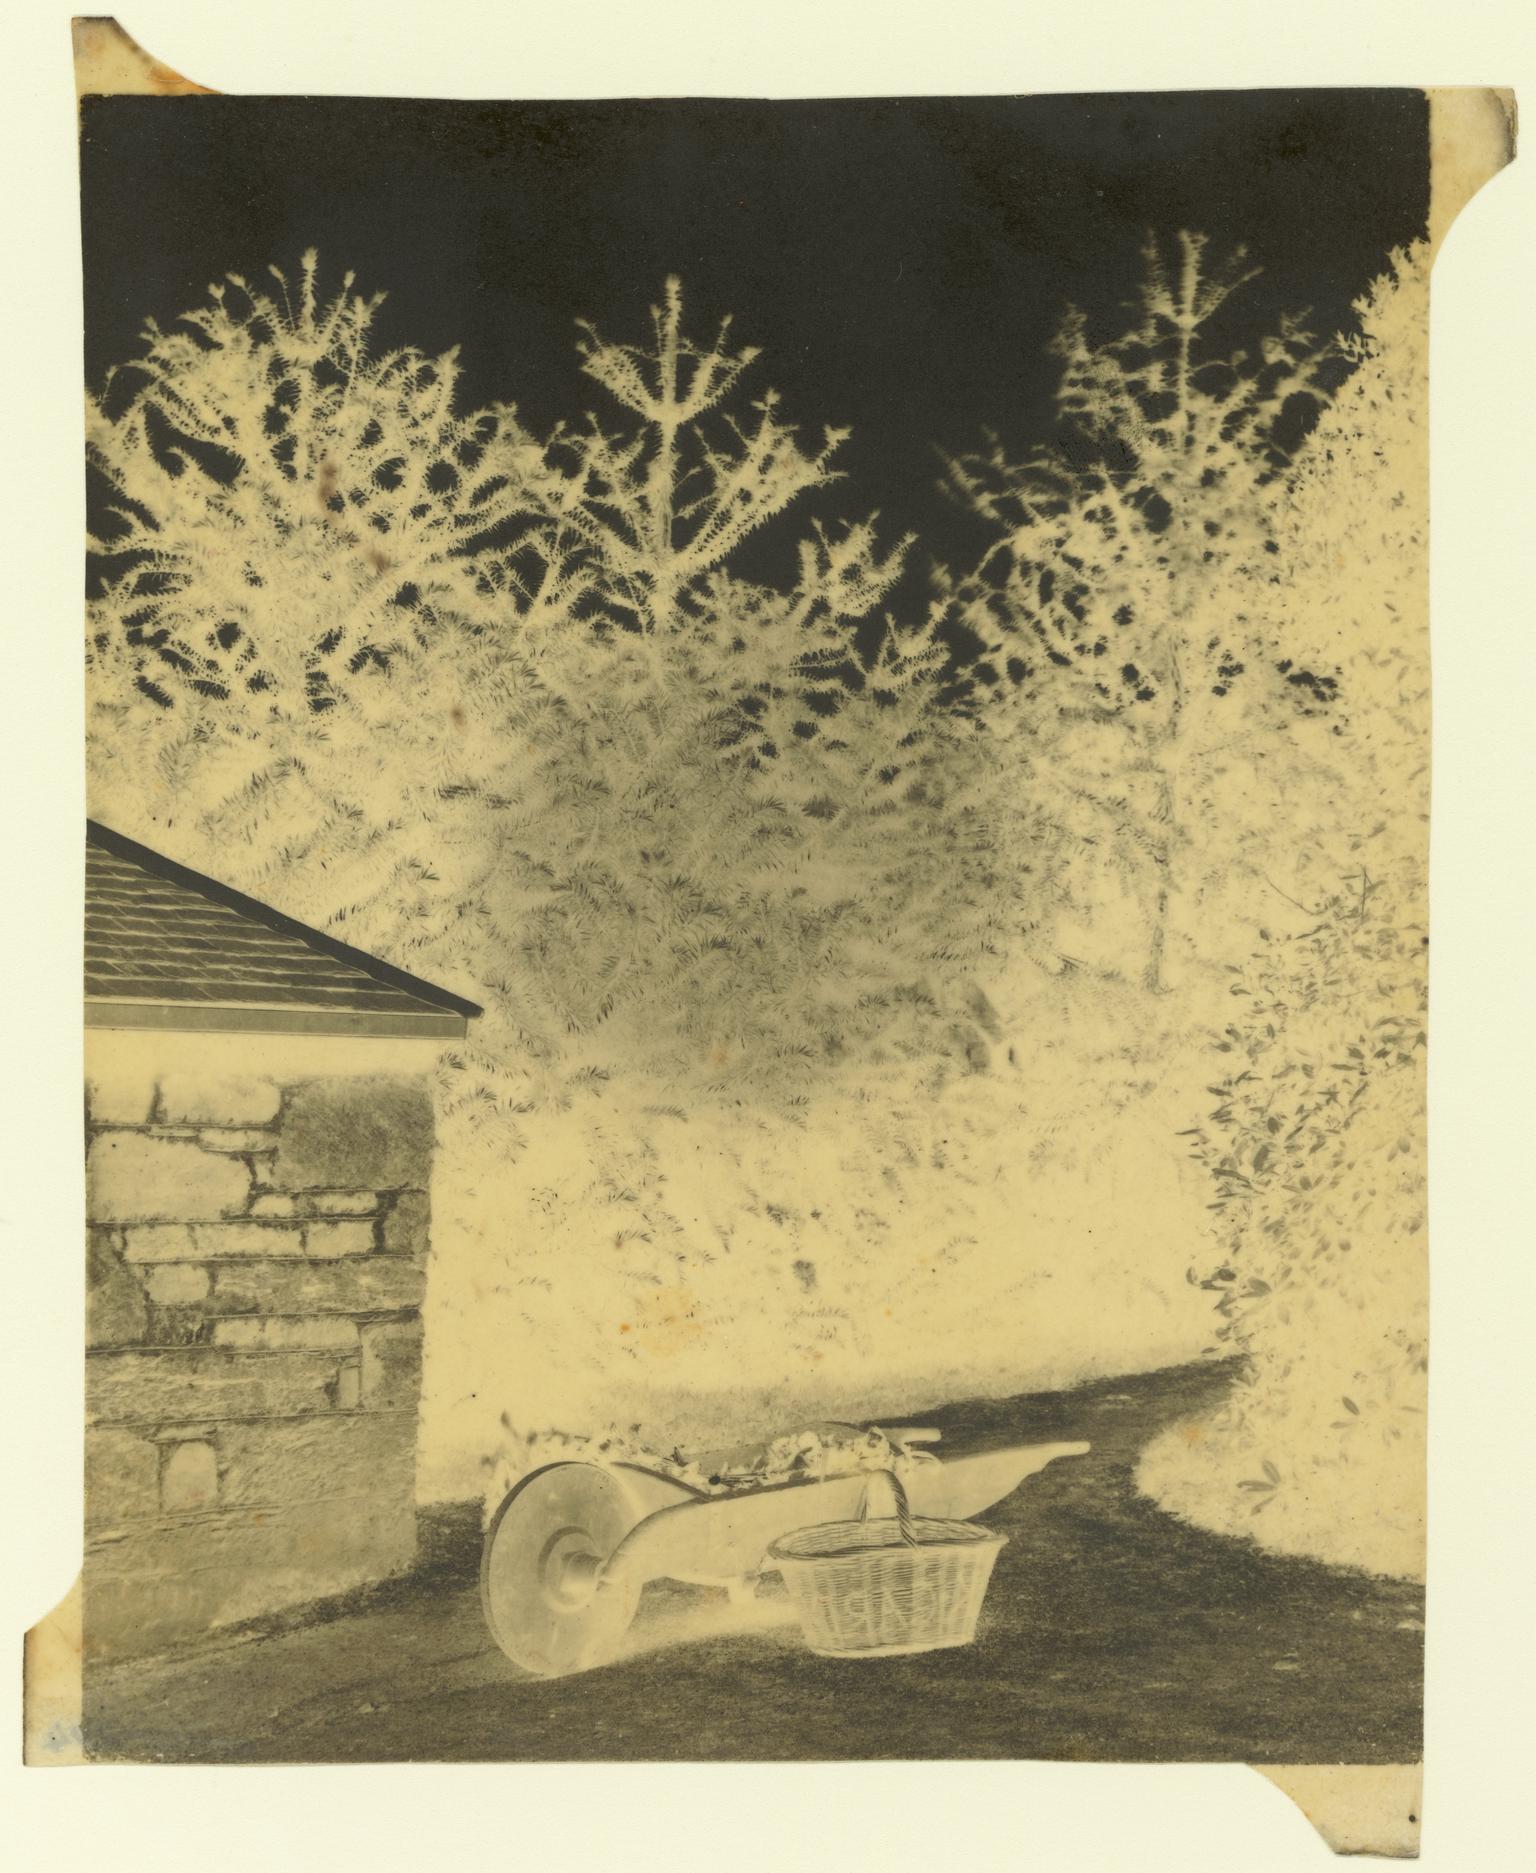 Carclew, paper negative